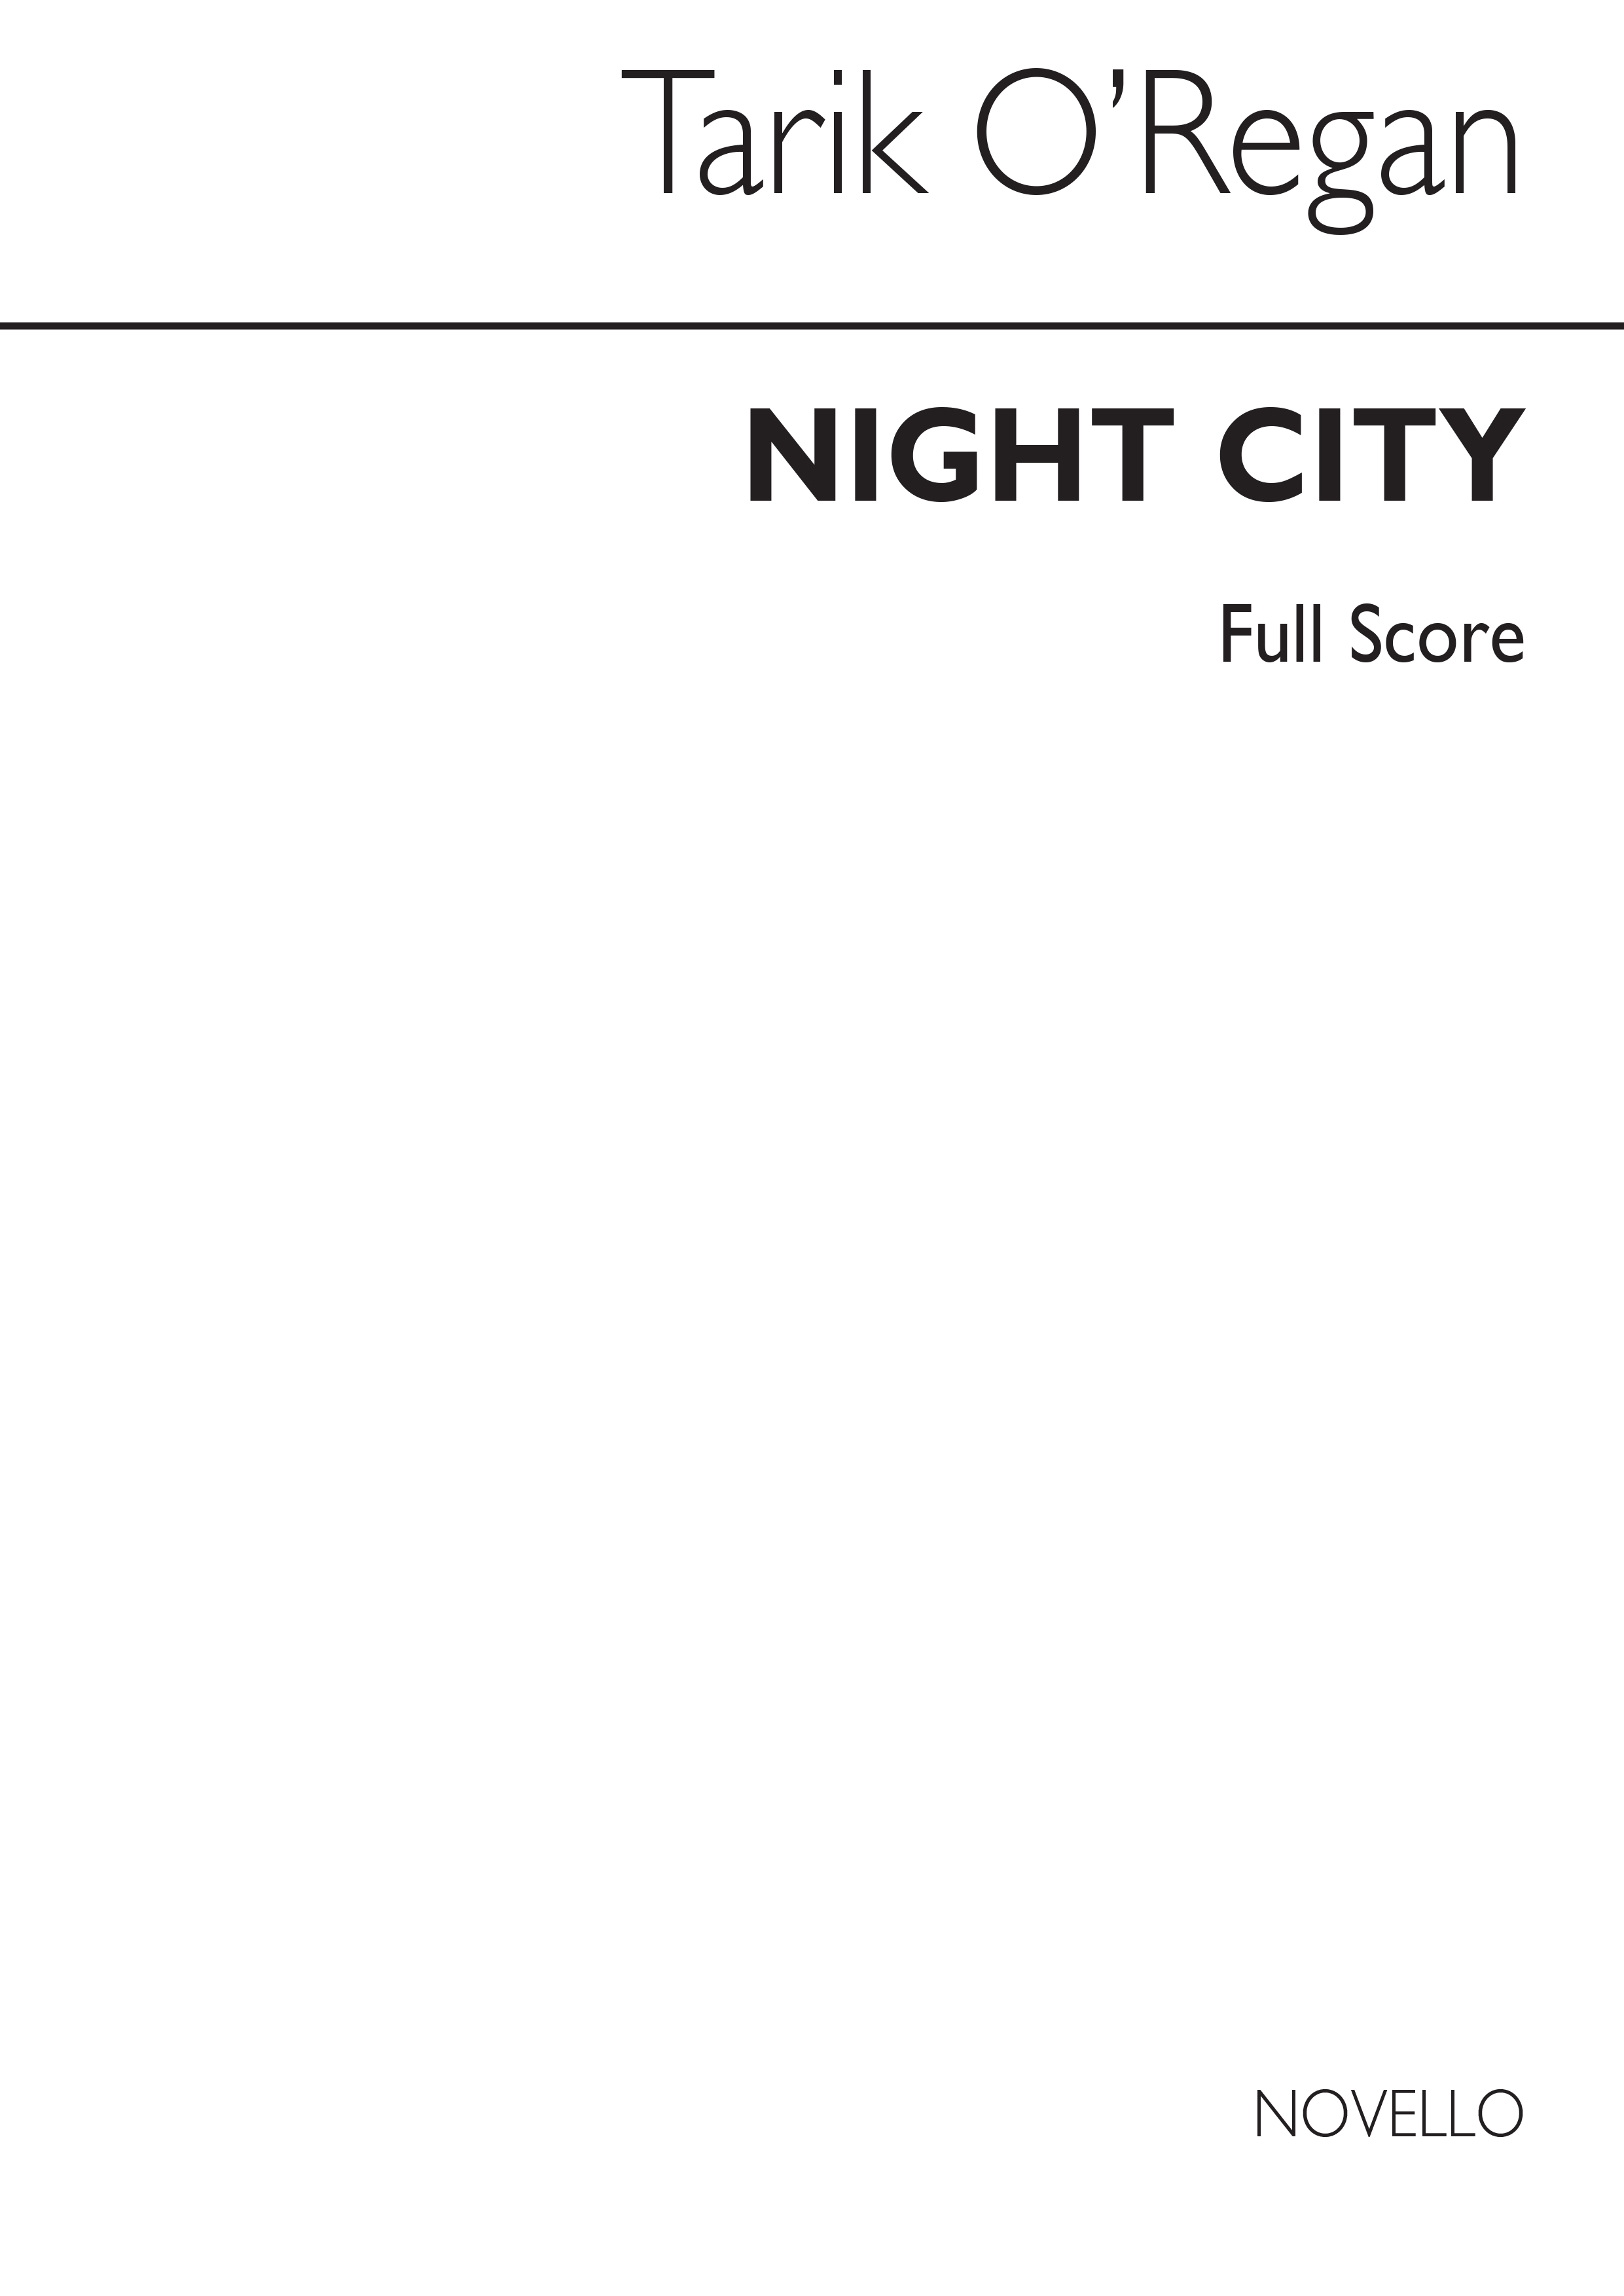 Tarik O'Regan: Night City (Full Score)